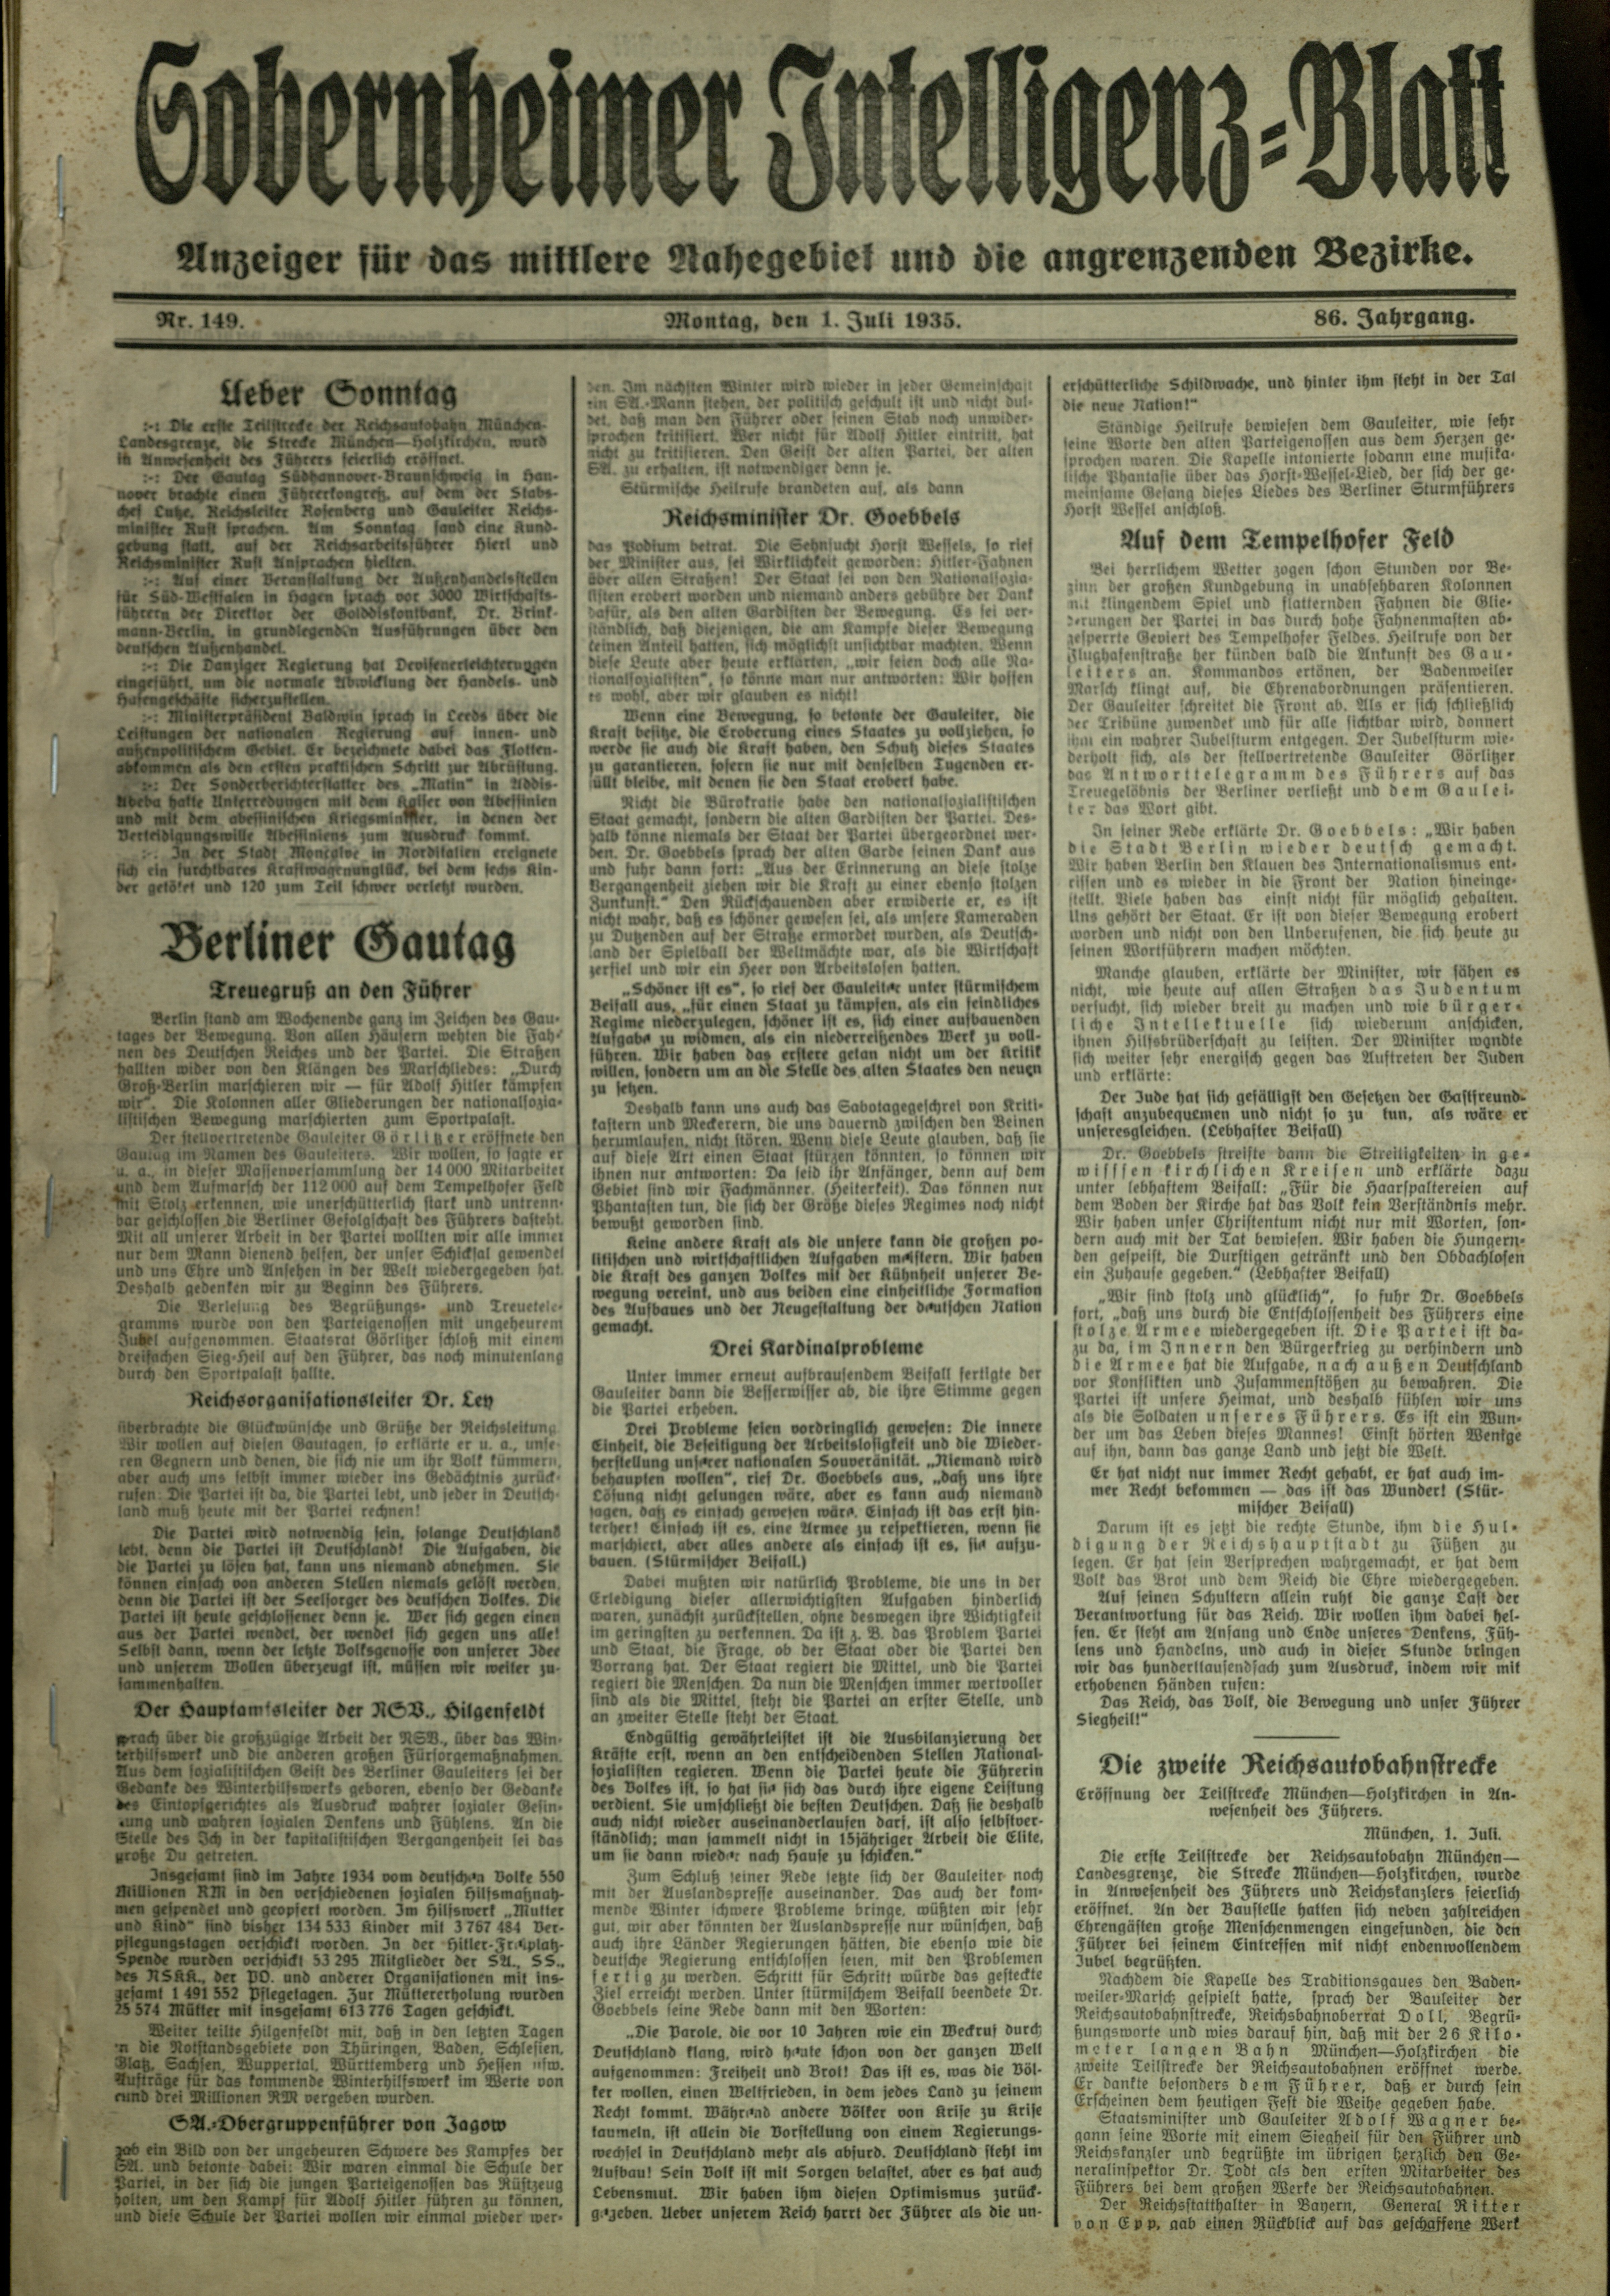 Zeitung: Sobernheimer Intelligenzblatt; Juli 1935, Jg. 86 Nr. 149 (Heimatmuseum Bad Sobernheim CC BY-NC-SA)